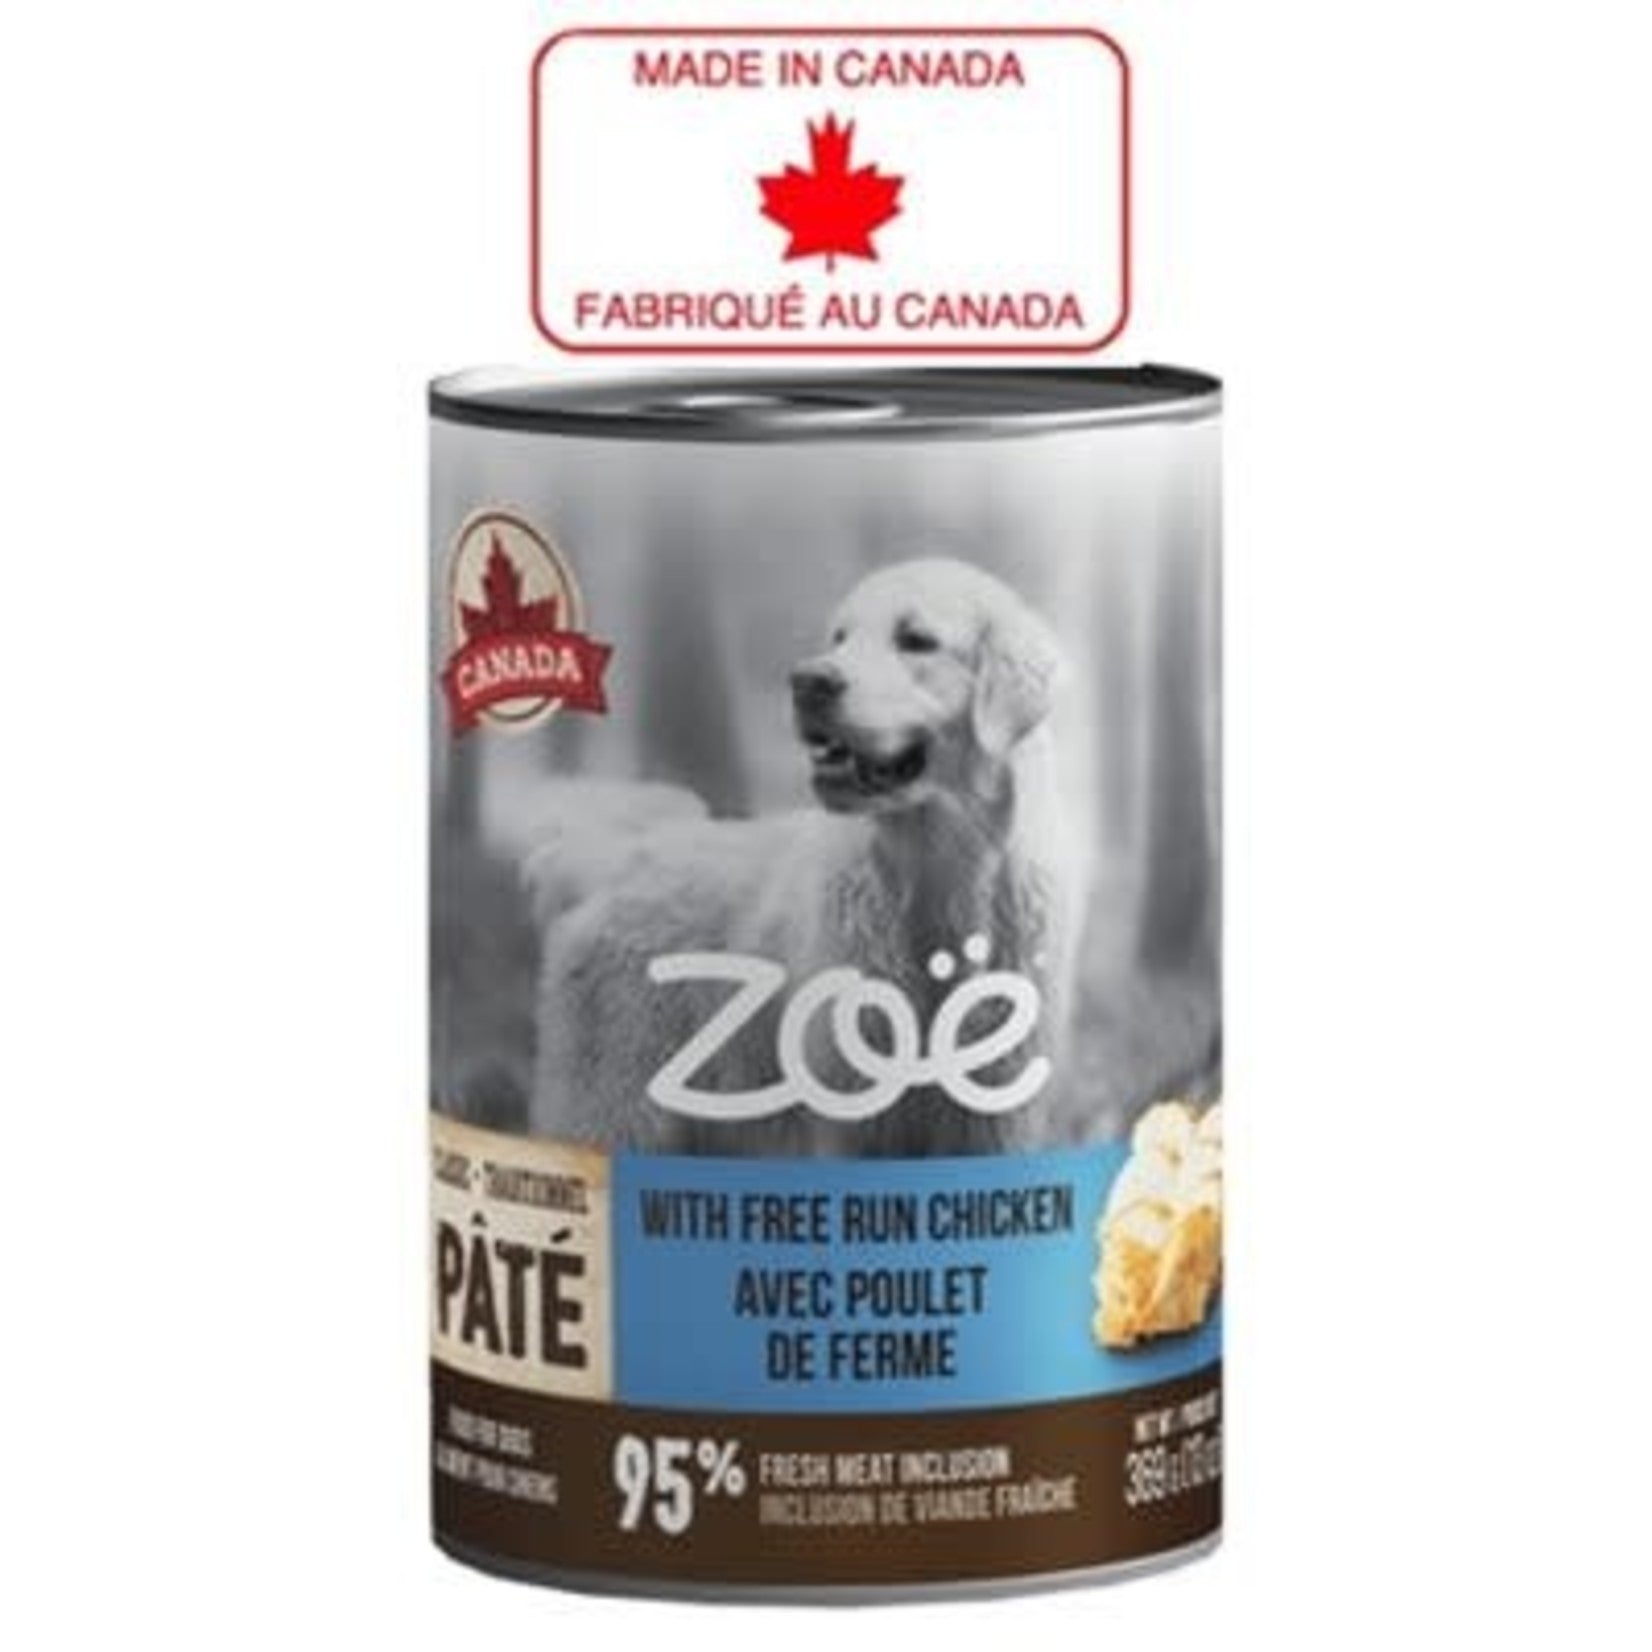 Zoe Free Run Chicken Flavor Dog Food